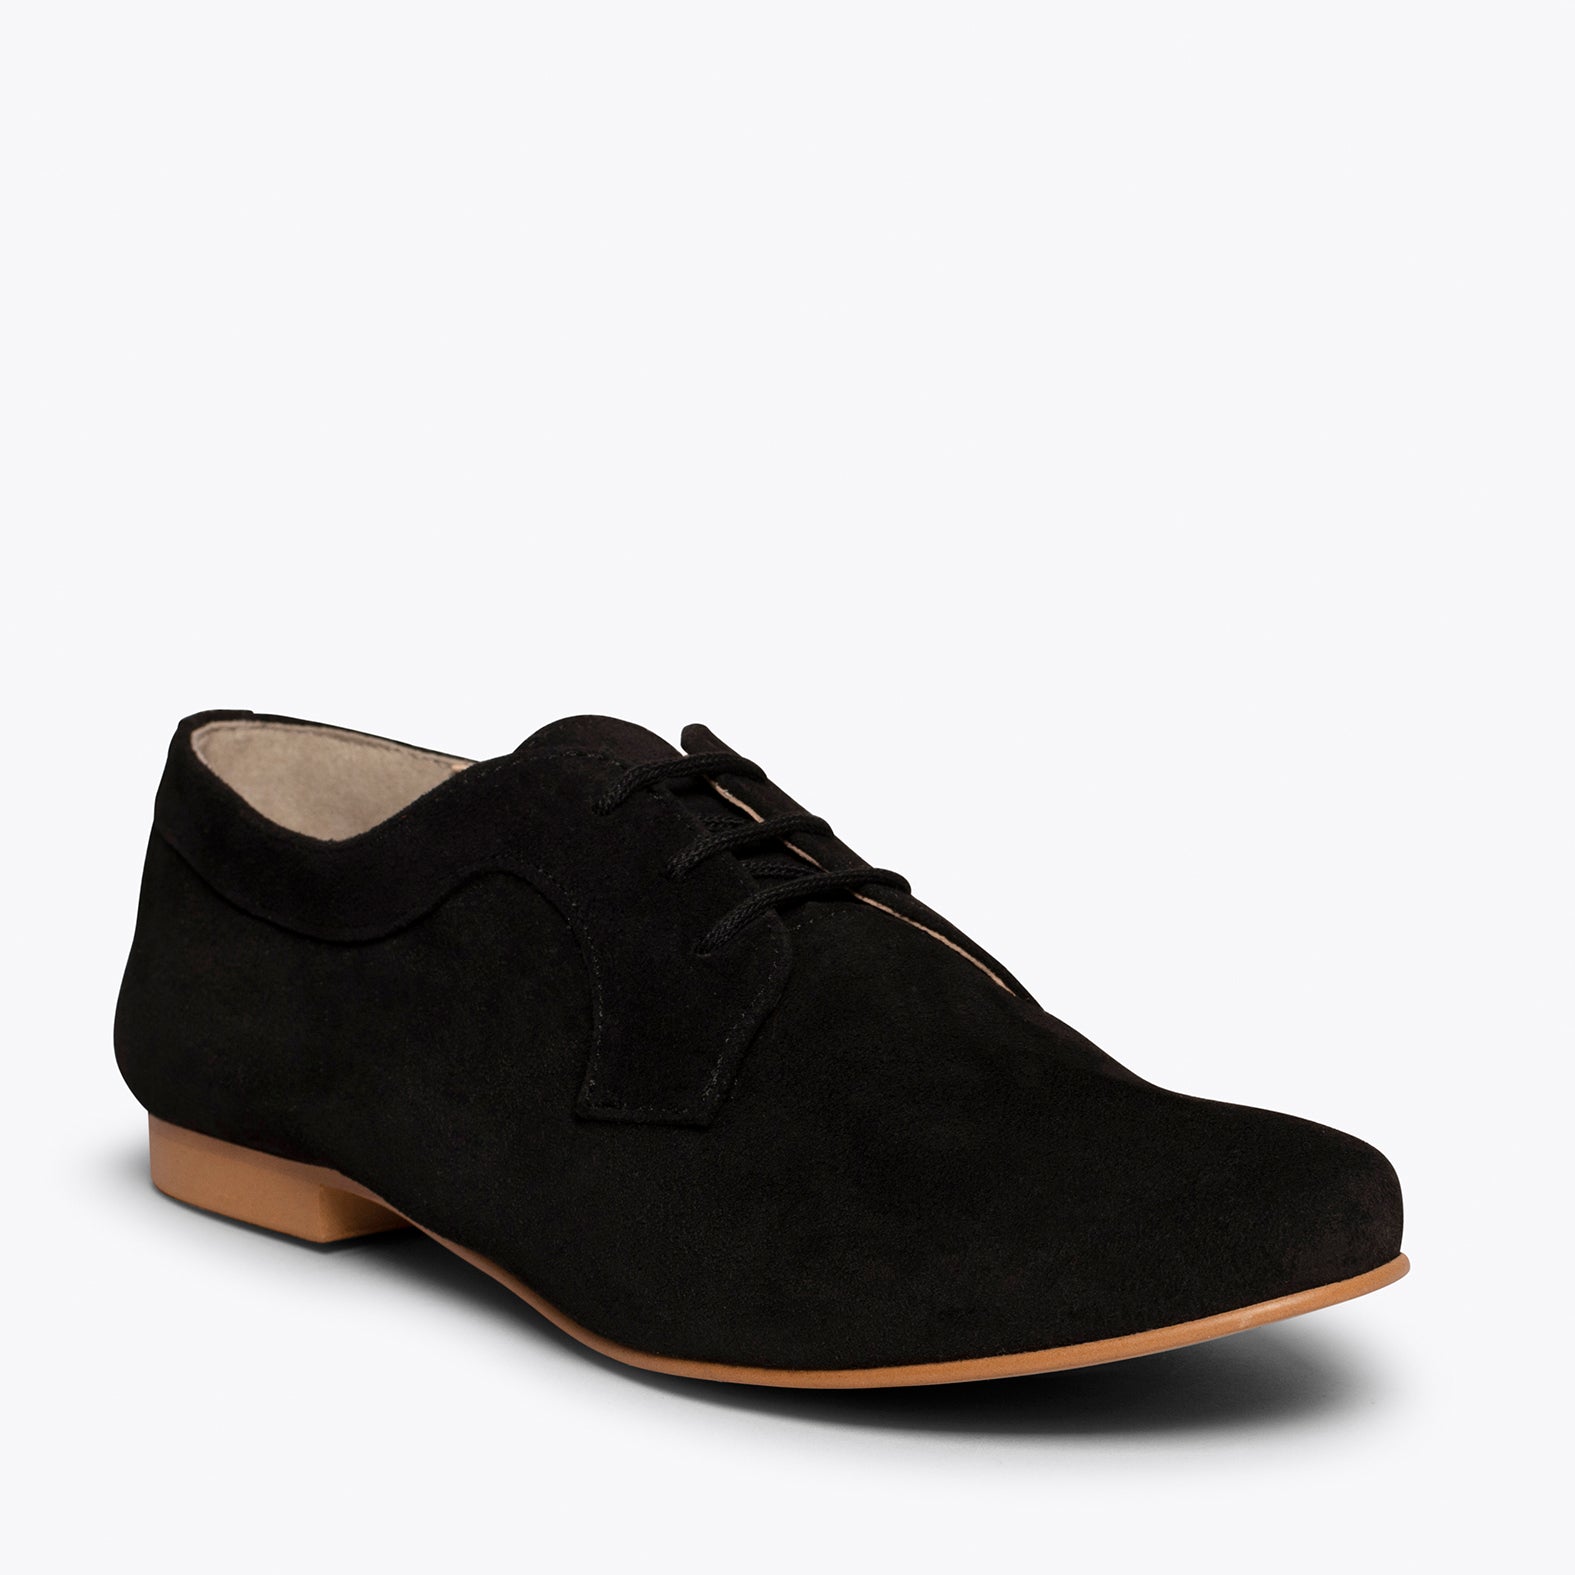 BLUCHER – BLACK flat shoe with laces